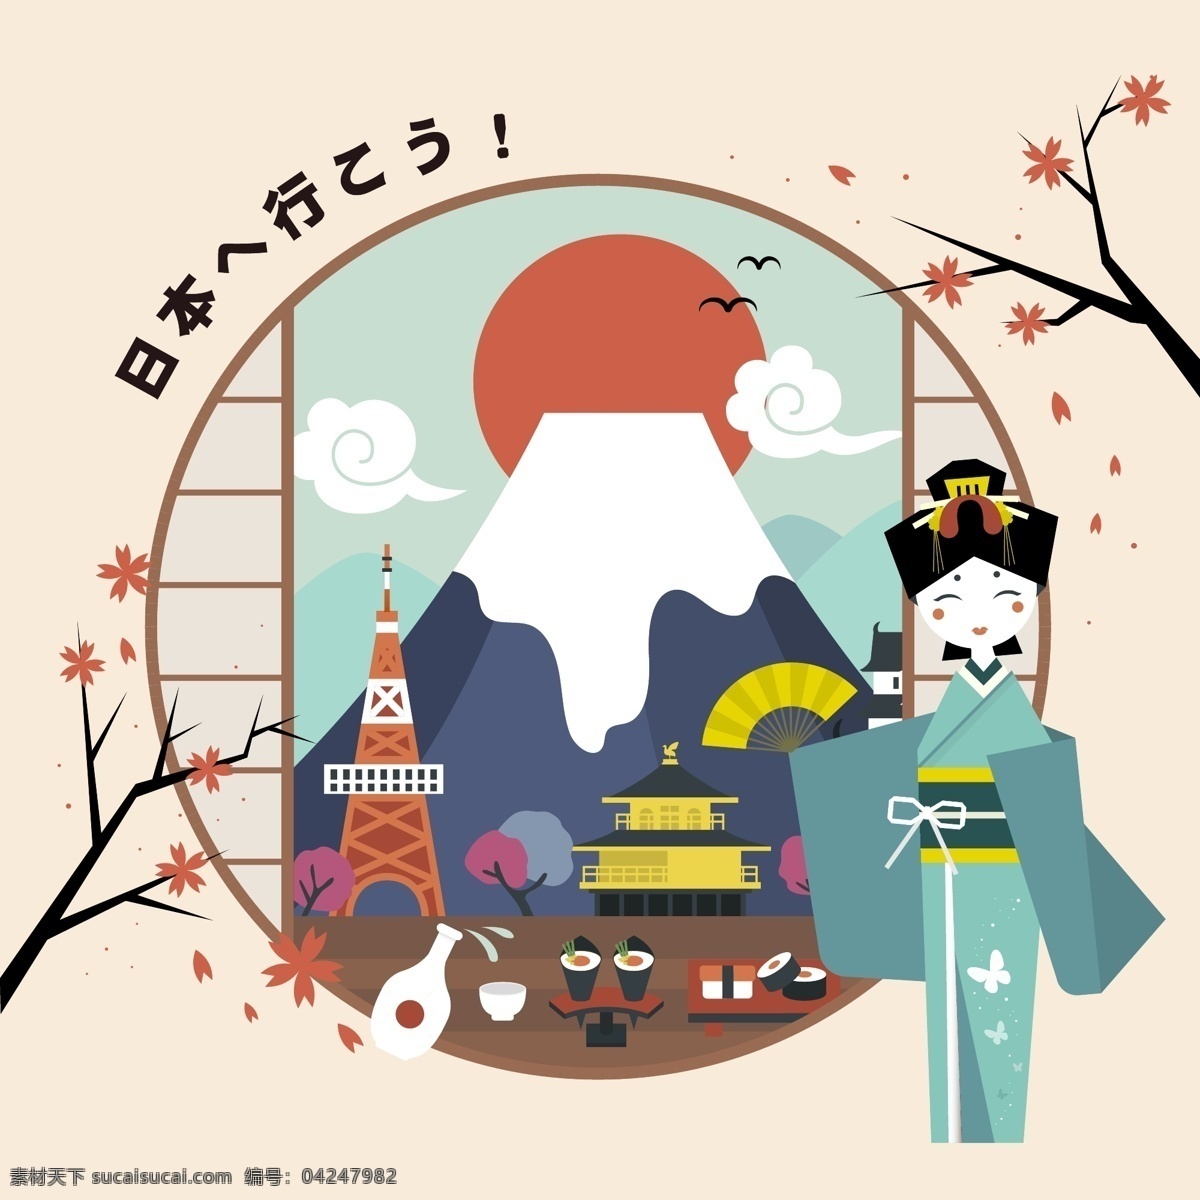 时尚 创意 日本 特色 插画 富士山 建筑 卡通 旅行 人物 樱花